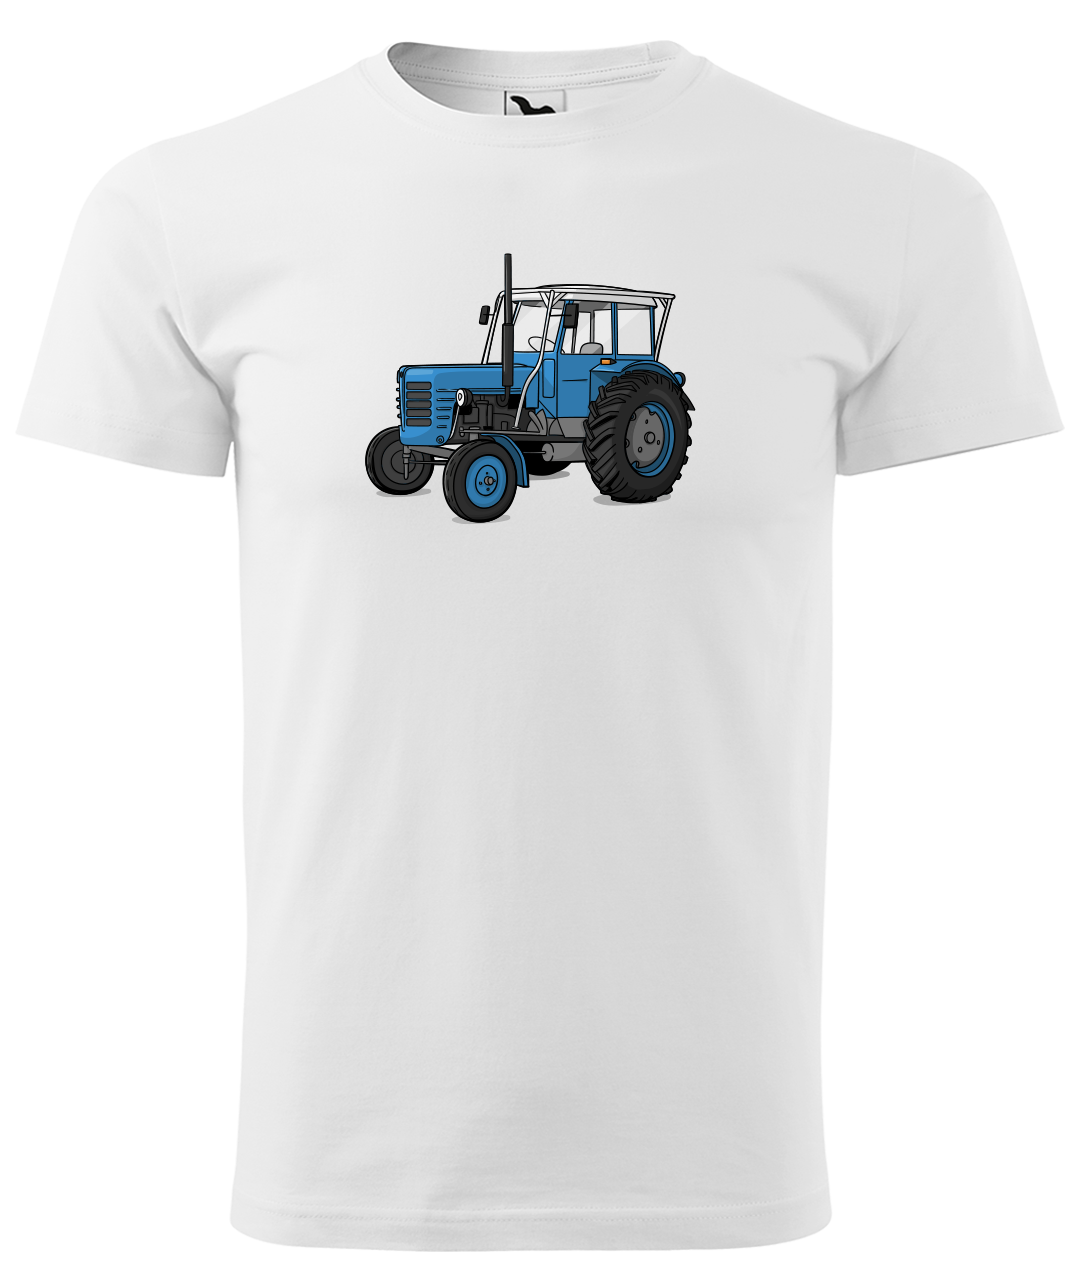 Dětské tričko s traktorem - Starý traktor Velikost: 4 roky / 110 cm, Barva: Bílá (00)